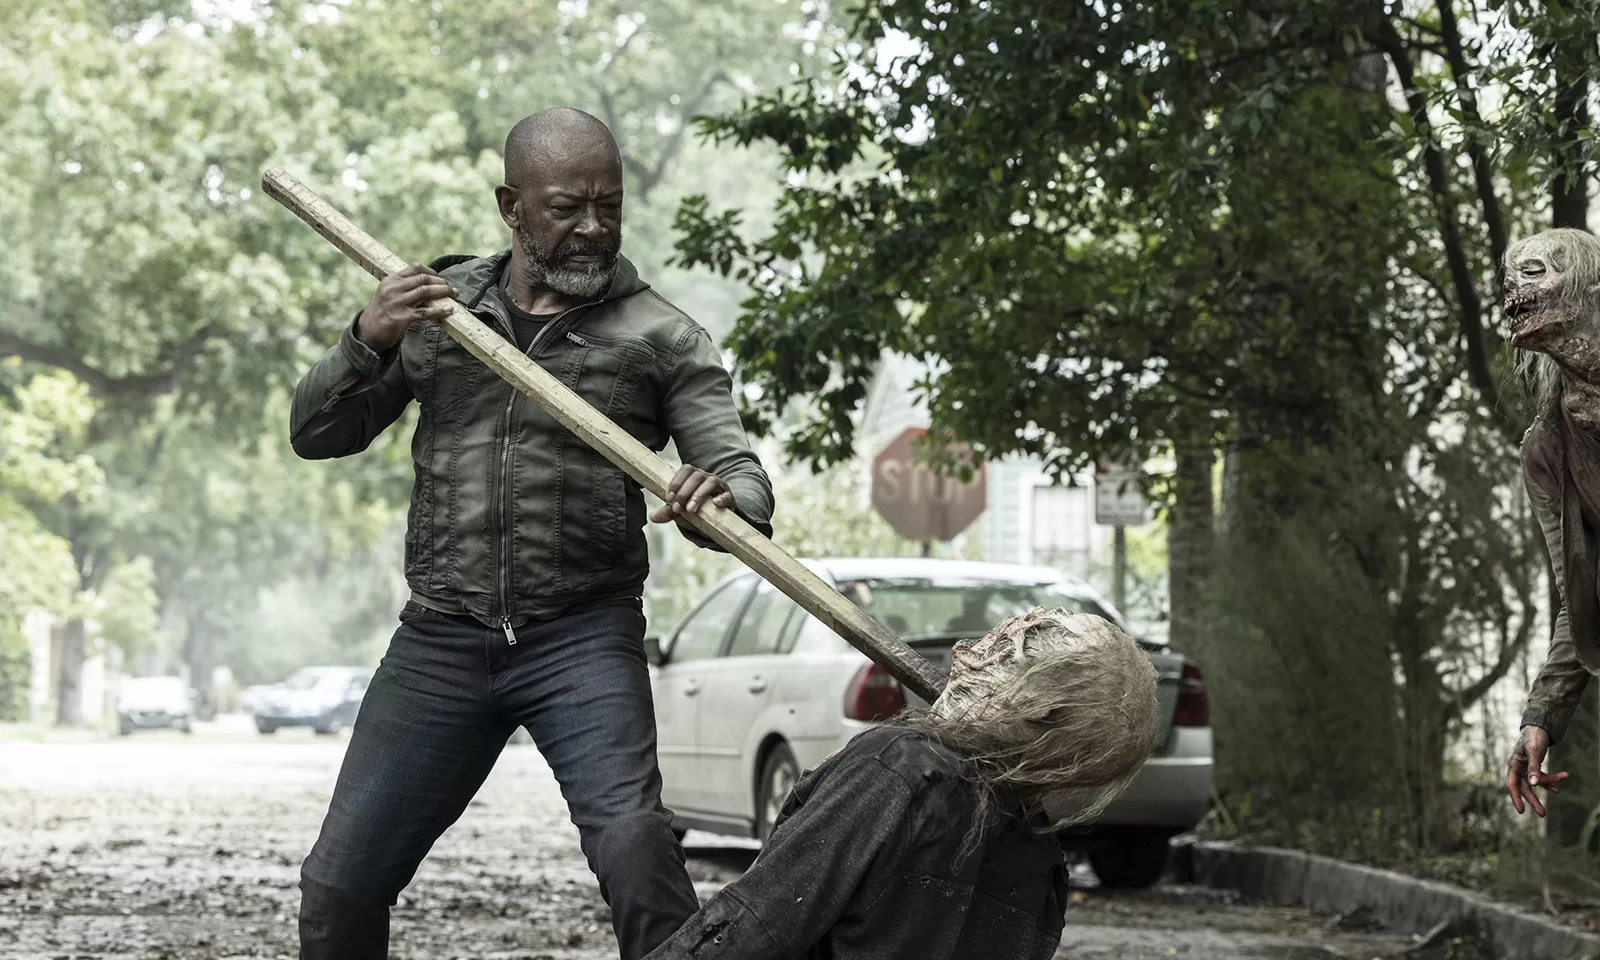 Morgan matando um zumbi com seu bastão em cena do Episódio 4 da 8ª Temporada de Fear the Walking Dead.